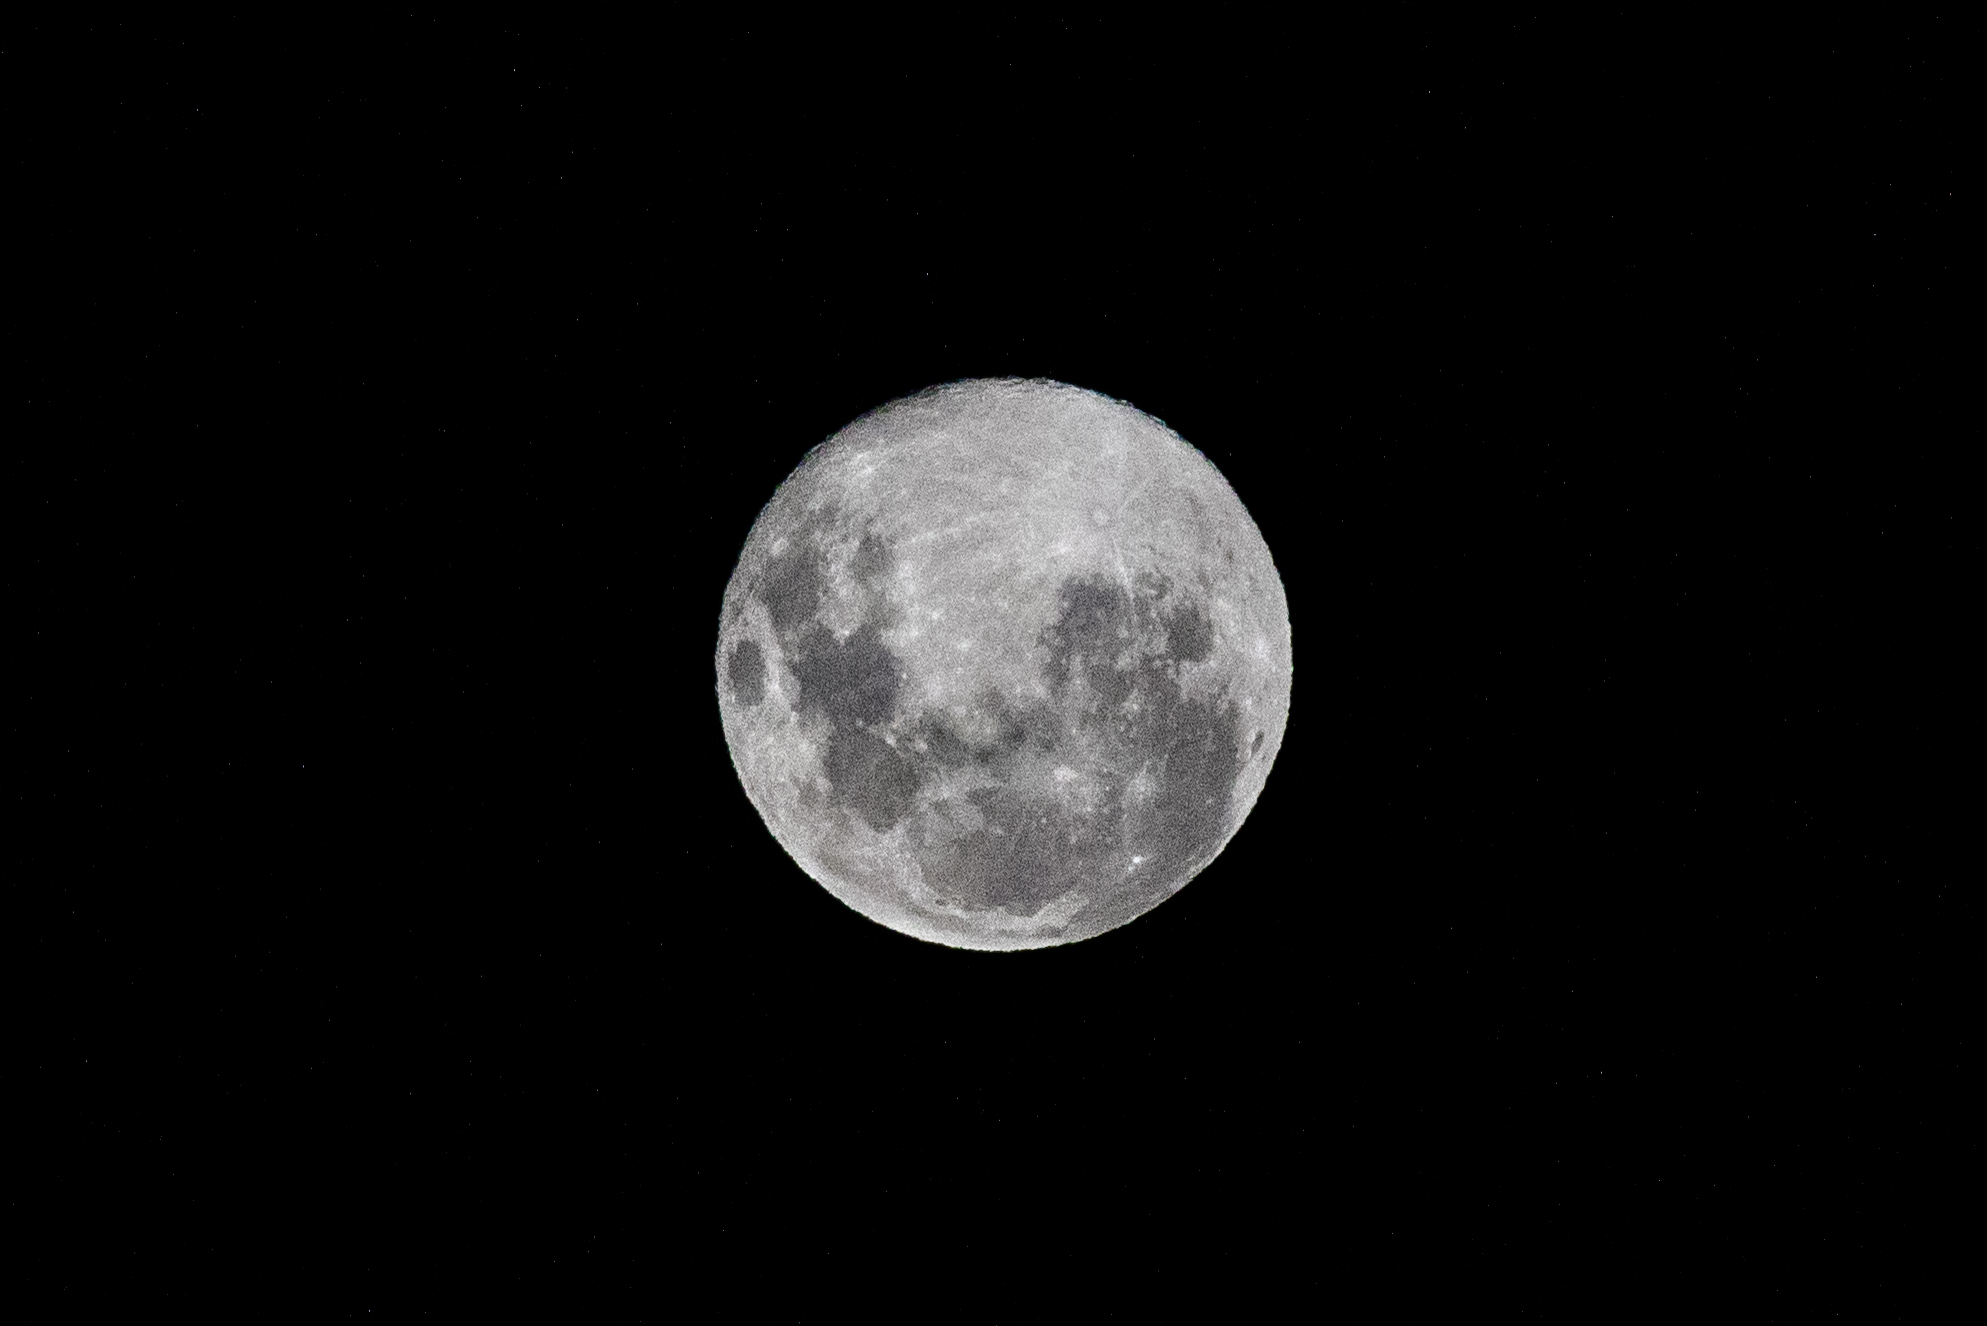 Superluna De Gusano. 09/03/2020